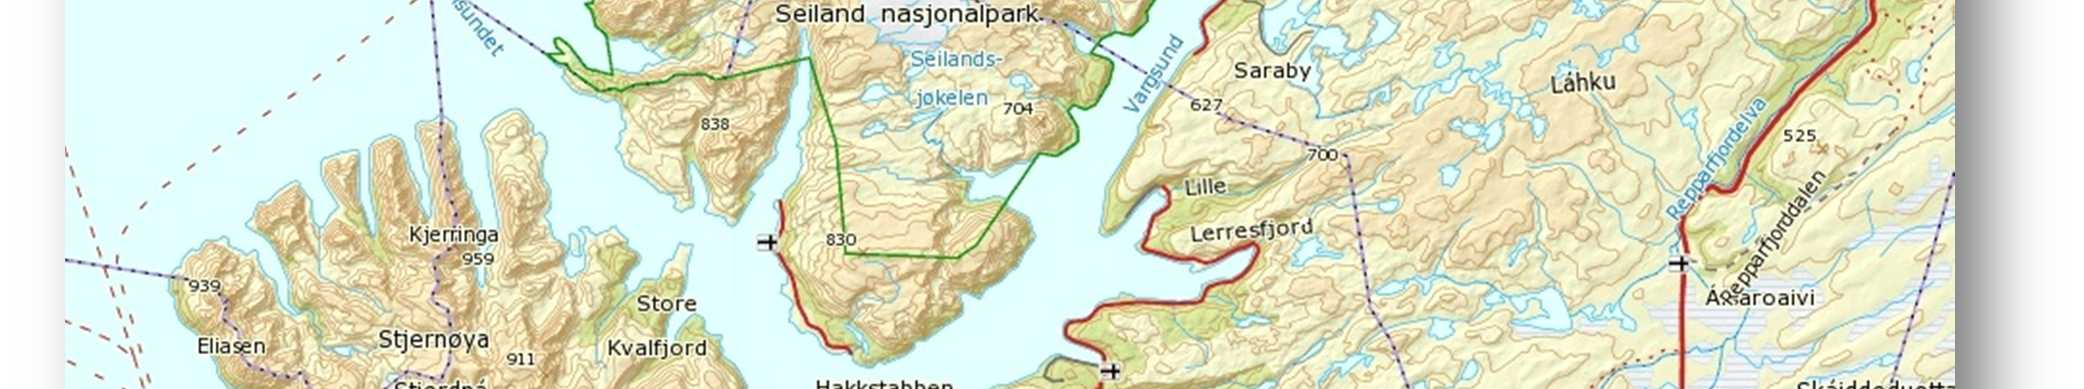 Sambandene som skal trafikkeres er Korsfjorden - Nyvoll og Akkarfjord - Kjerringholmen.